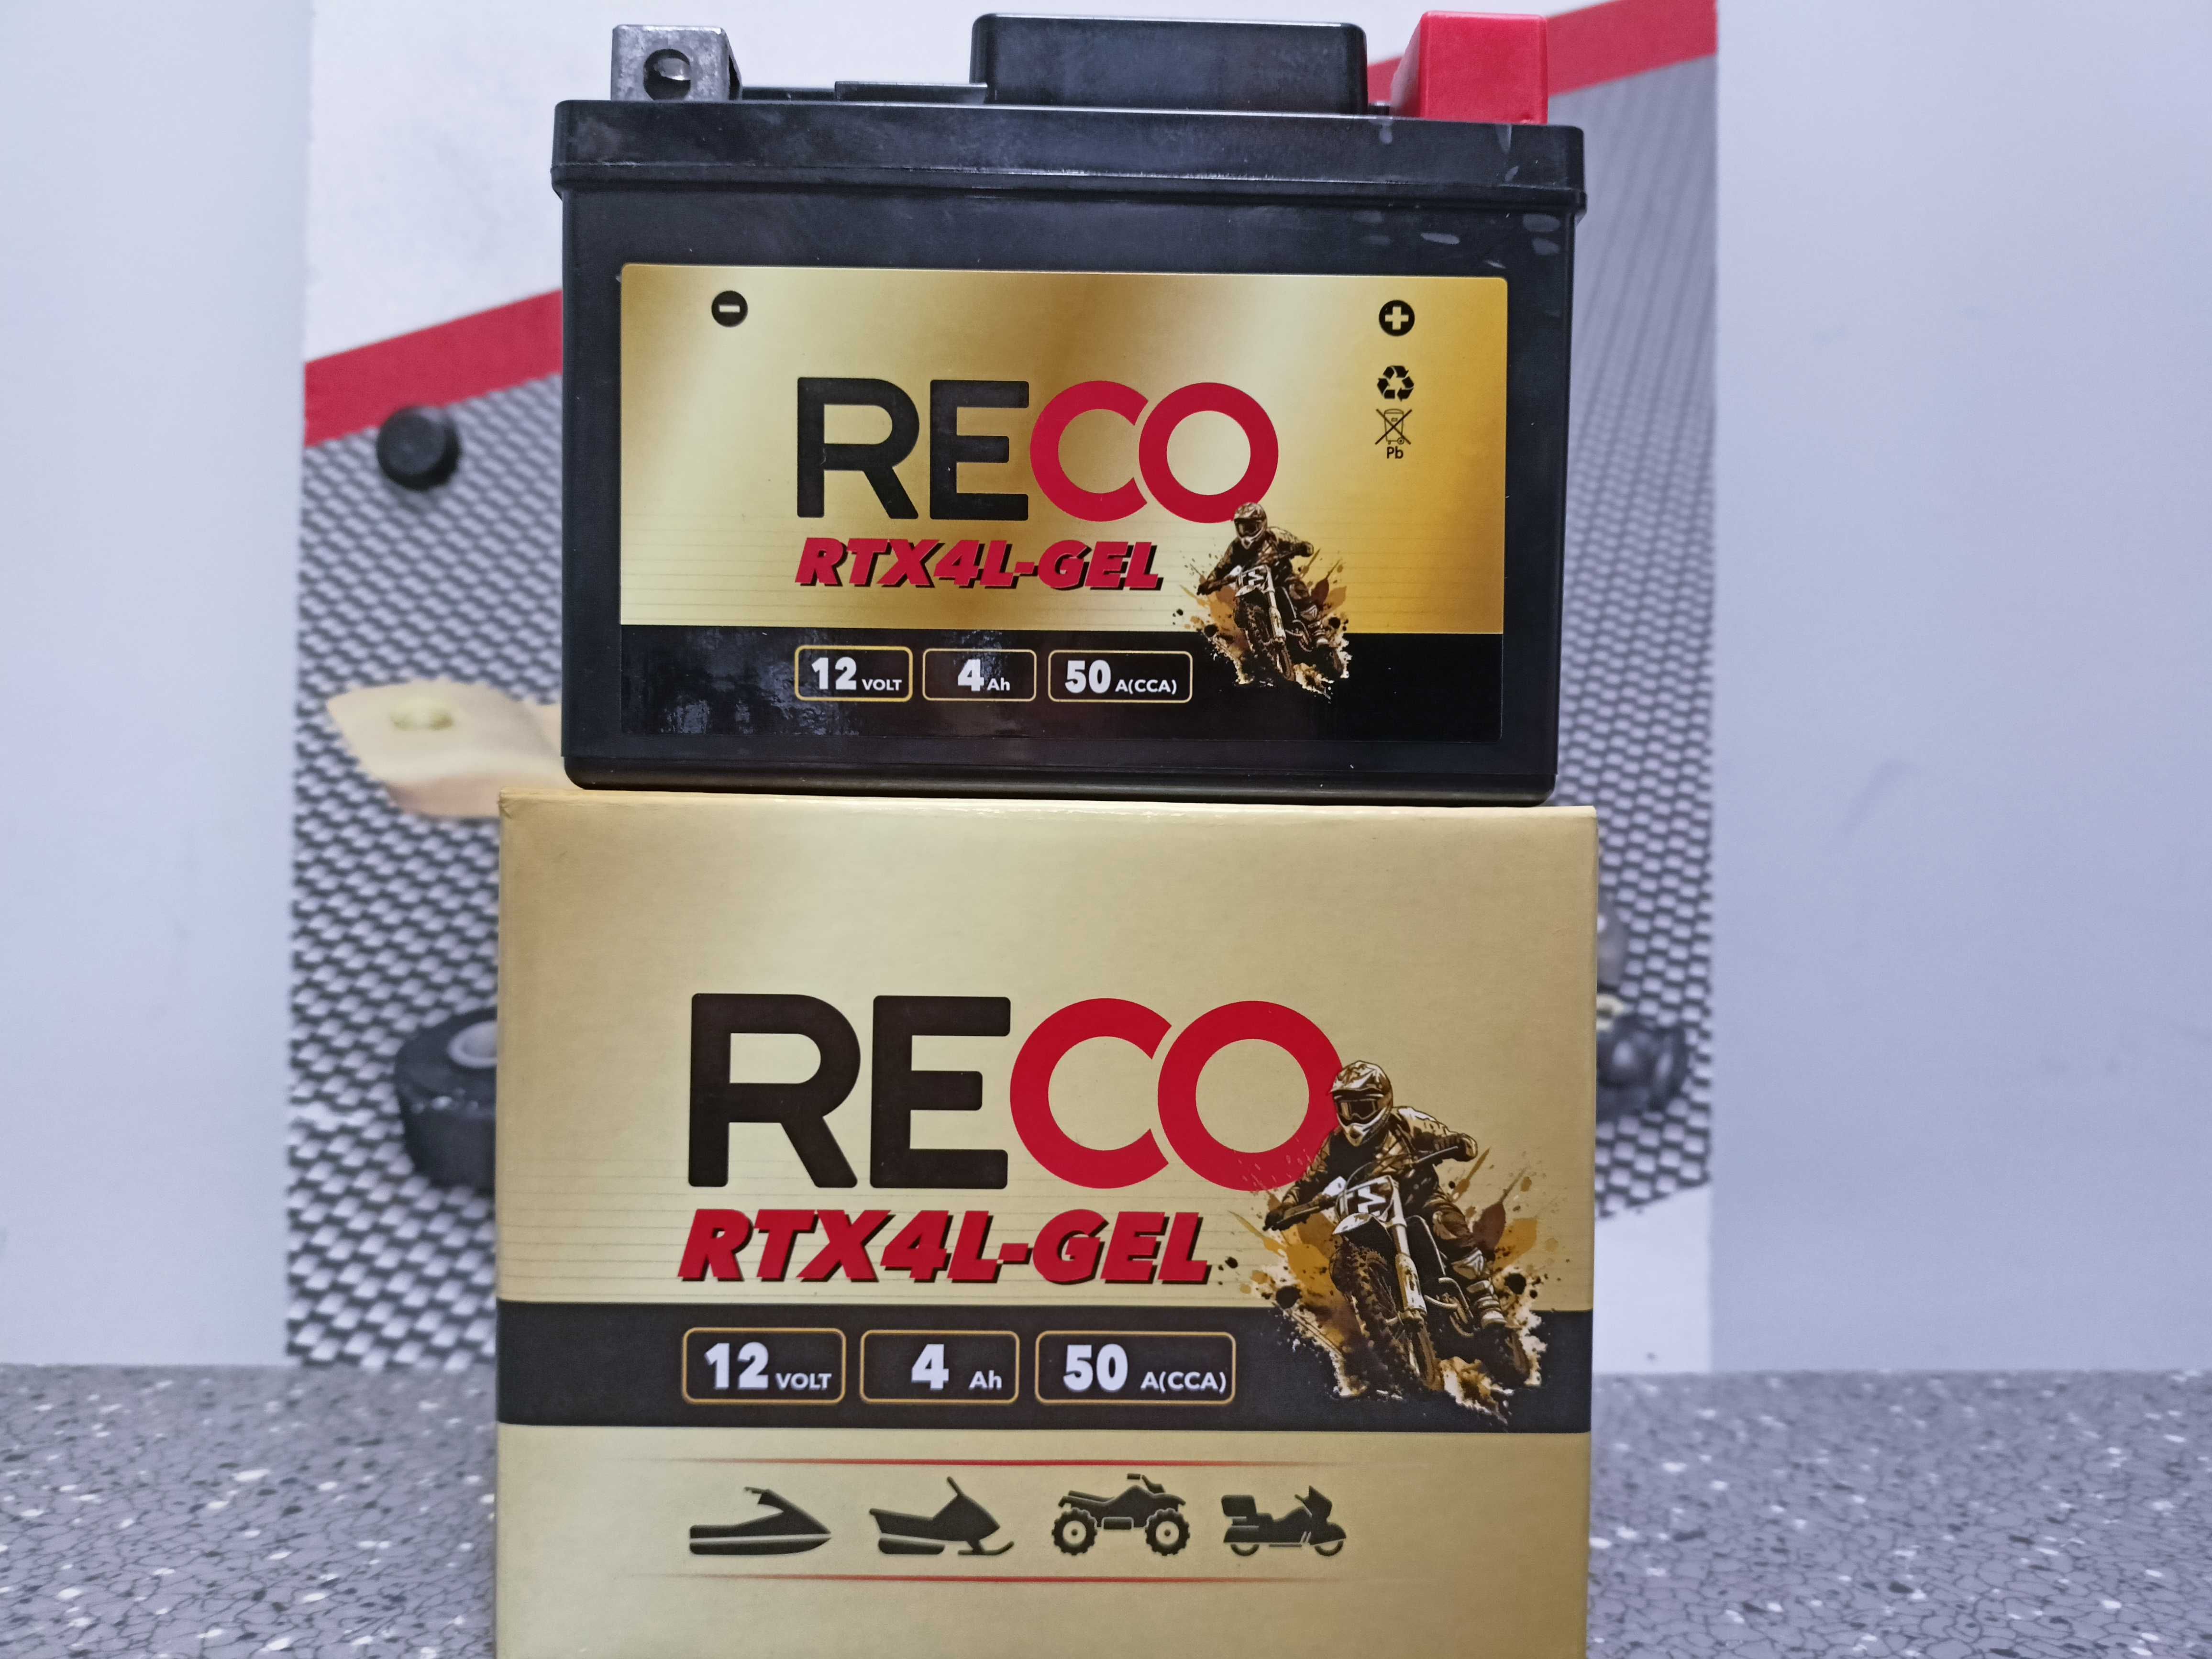 Akumulator motocyklowy 12V/4AH Reco RTX4L-GEL 50A